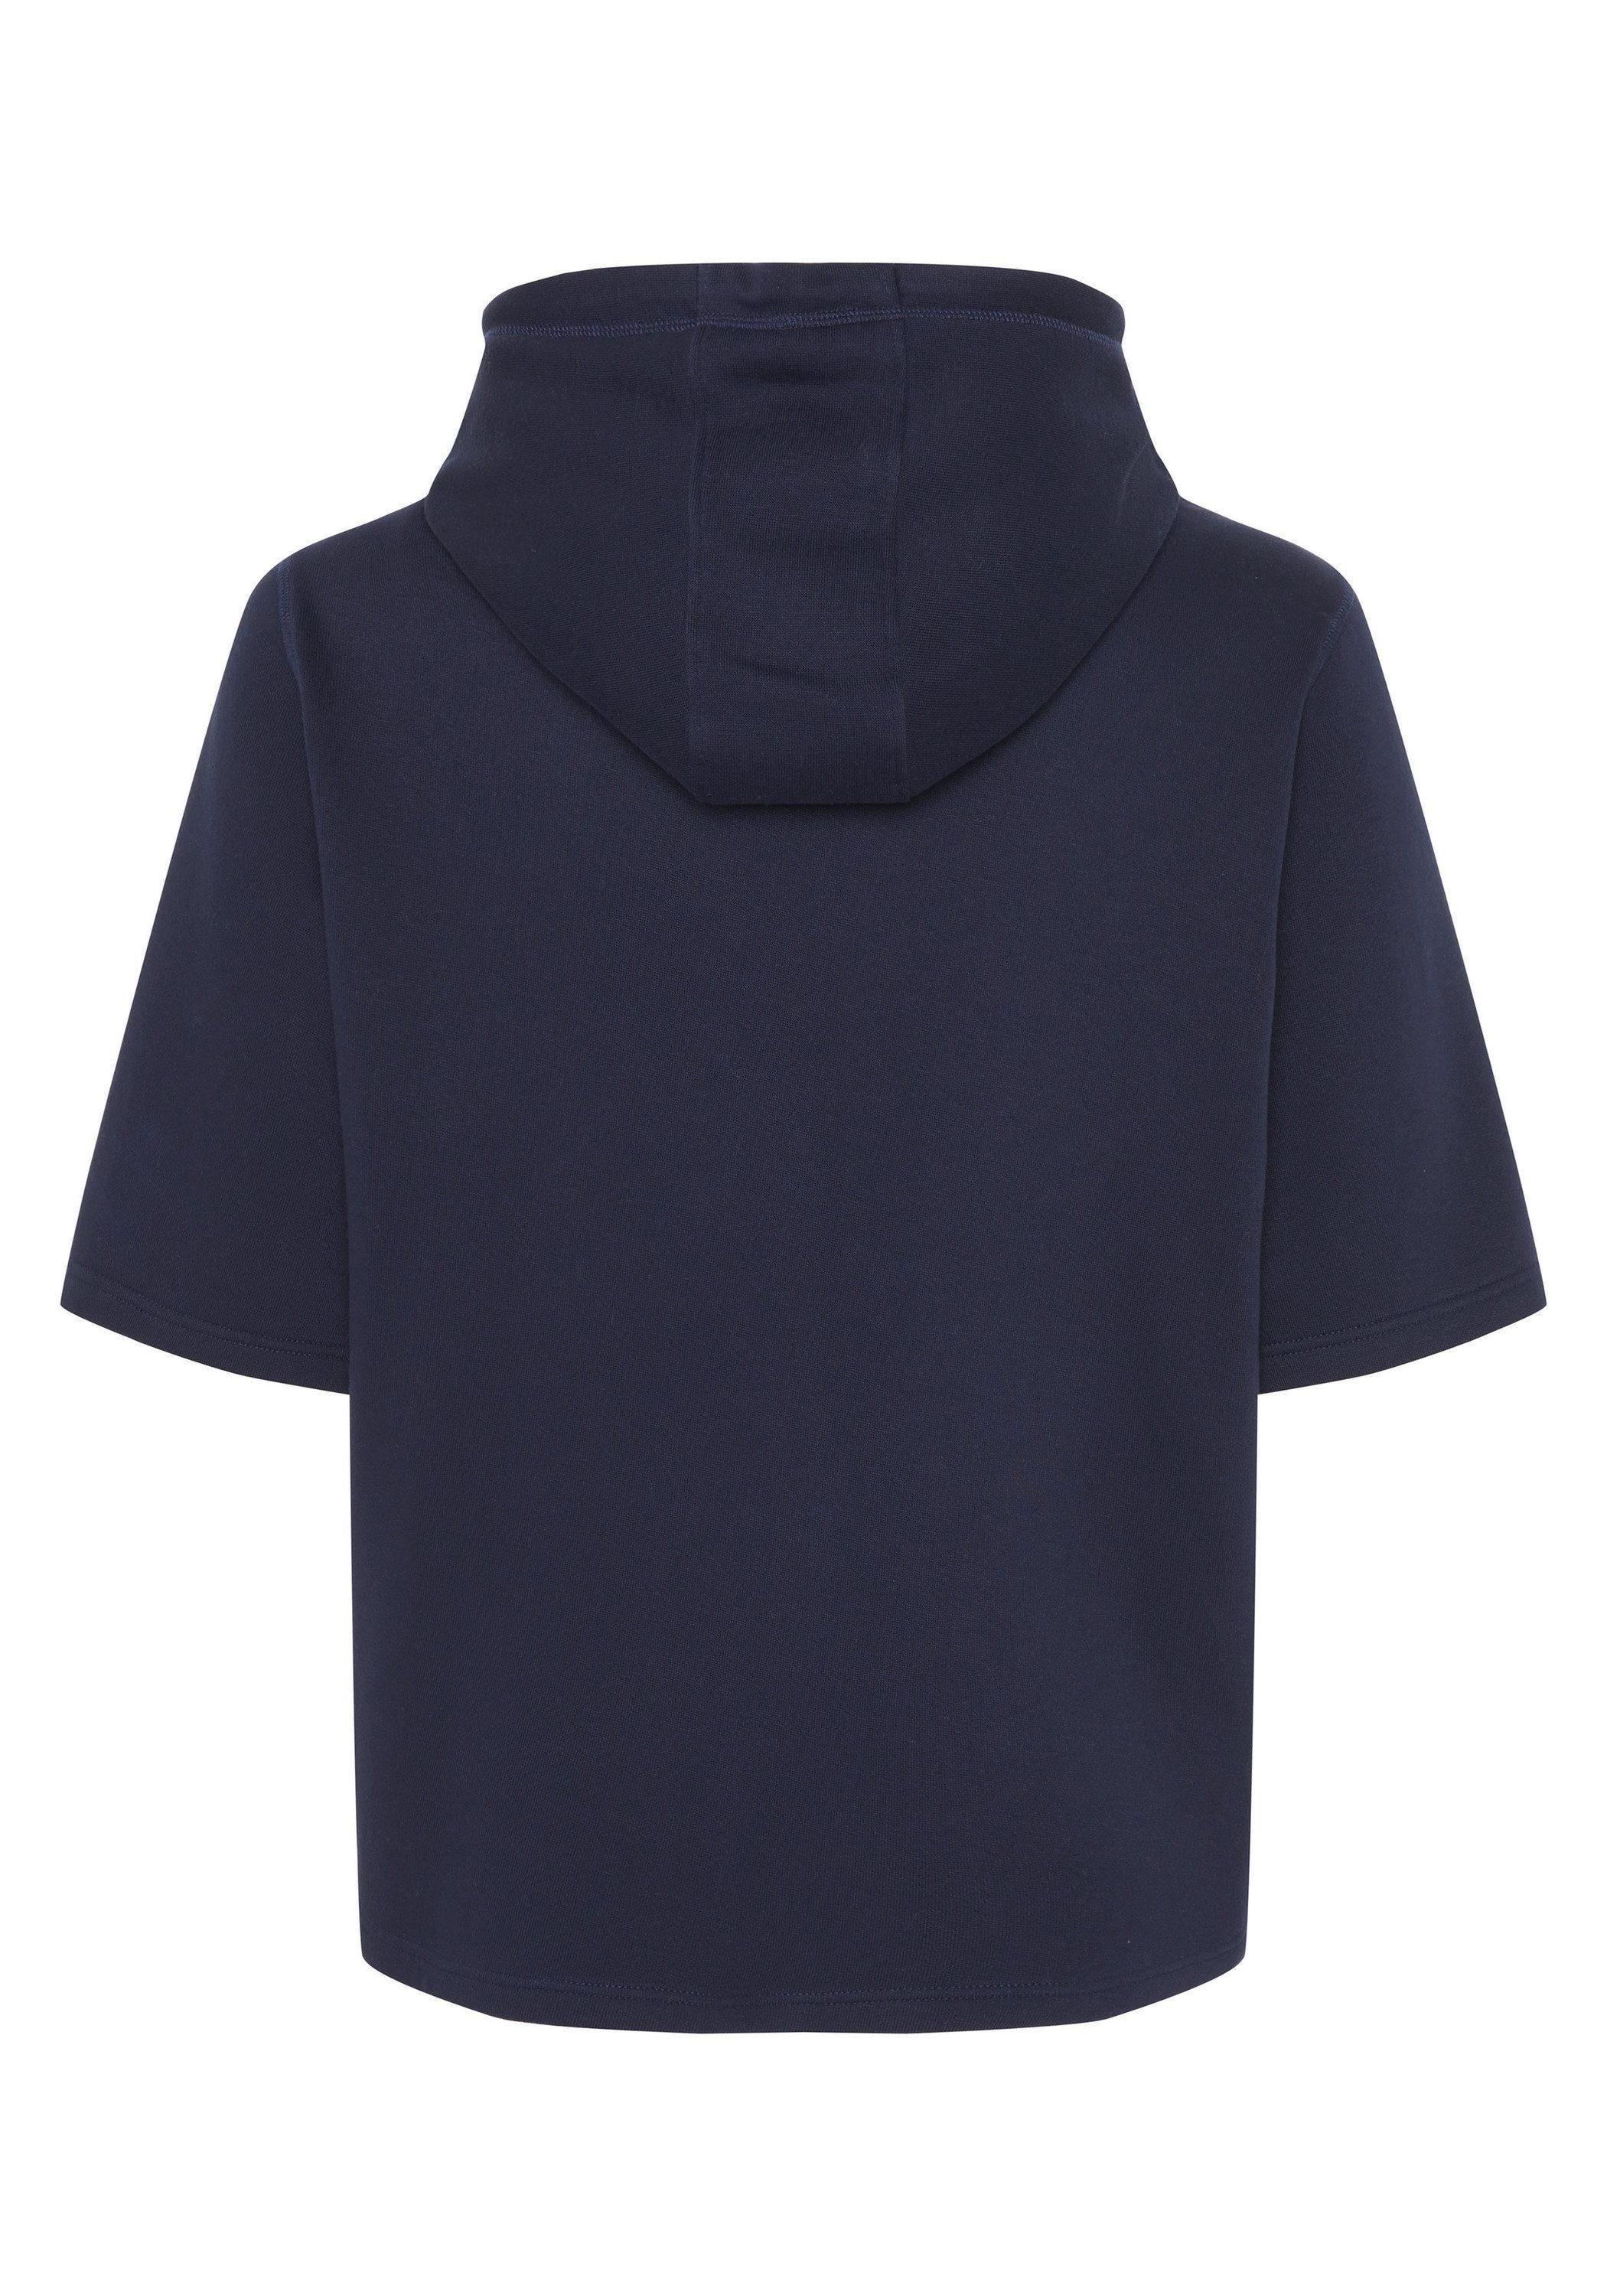 Kurzarm-Hoodie Kapuzensweatshirt dunkel blau Chiemsee